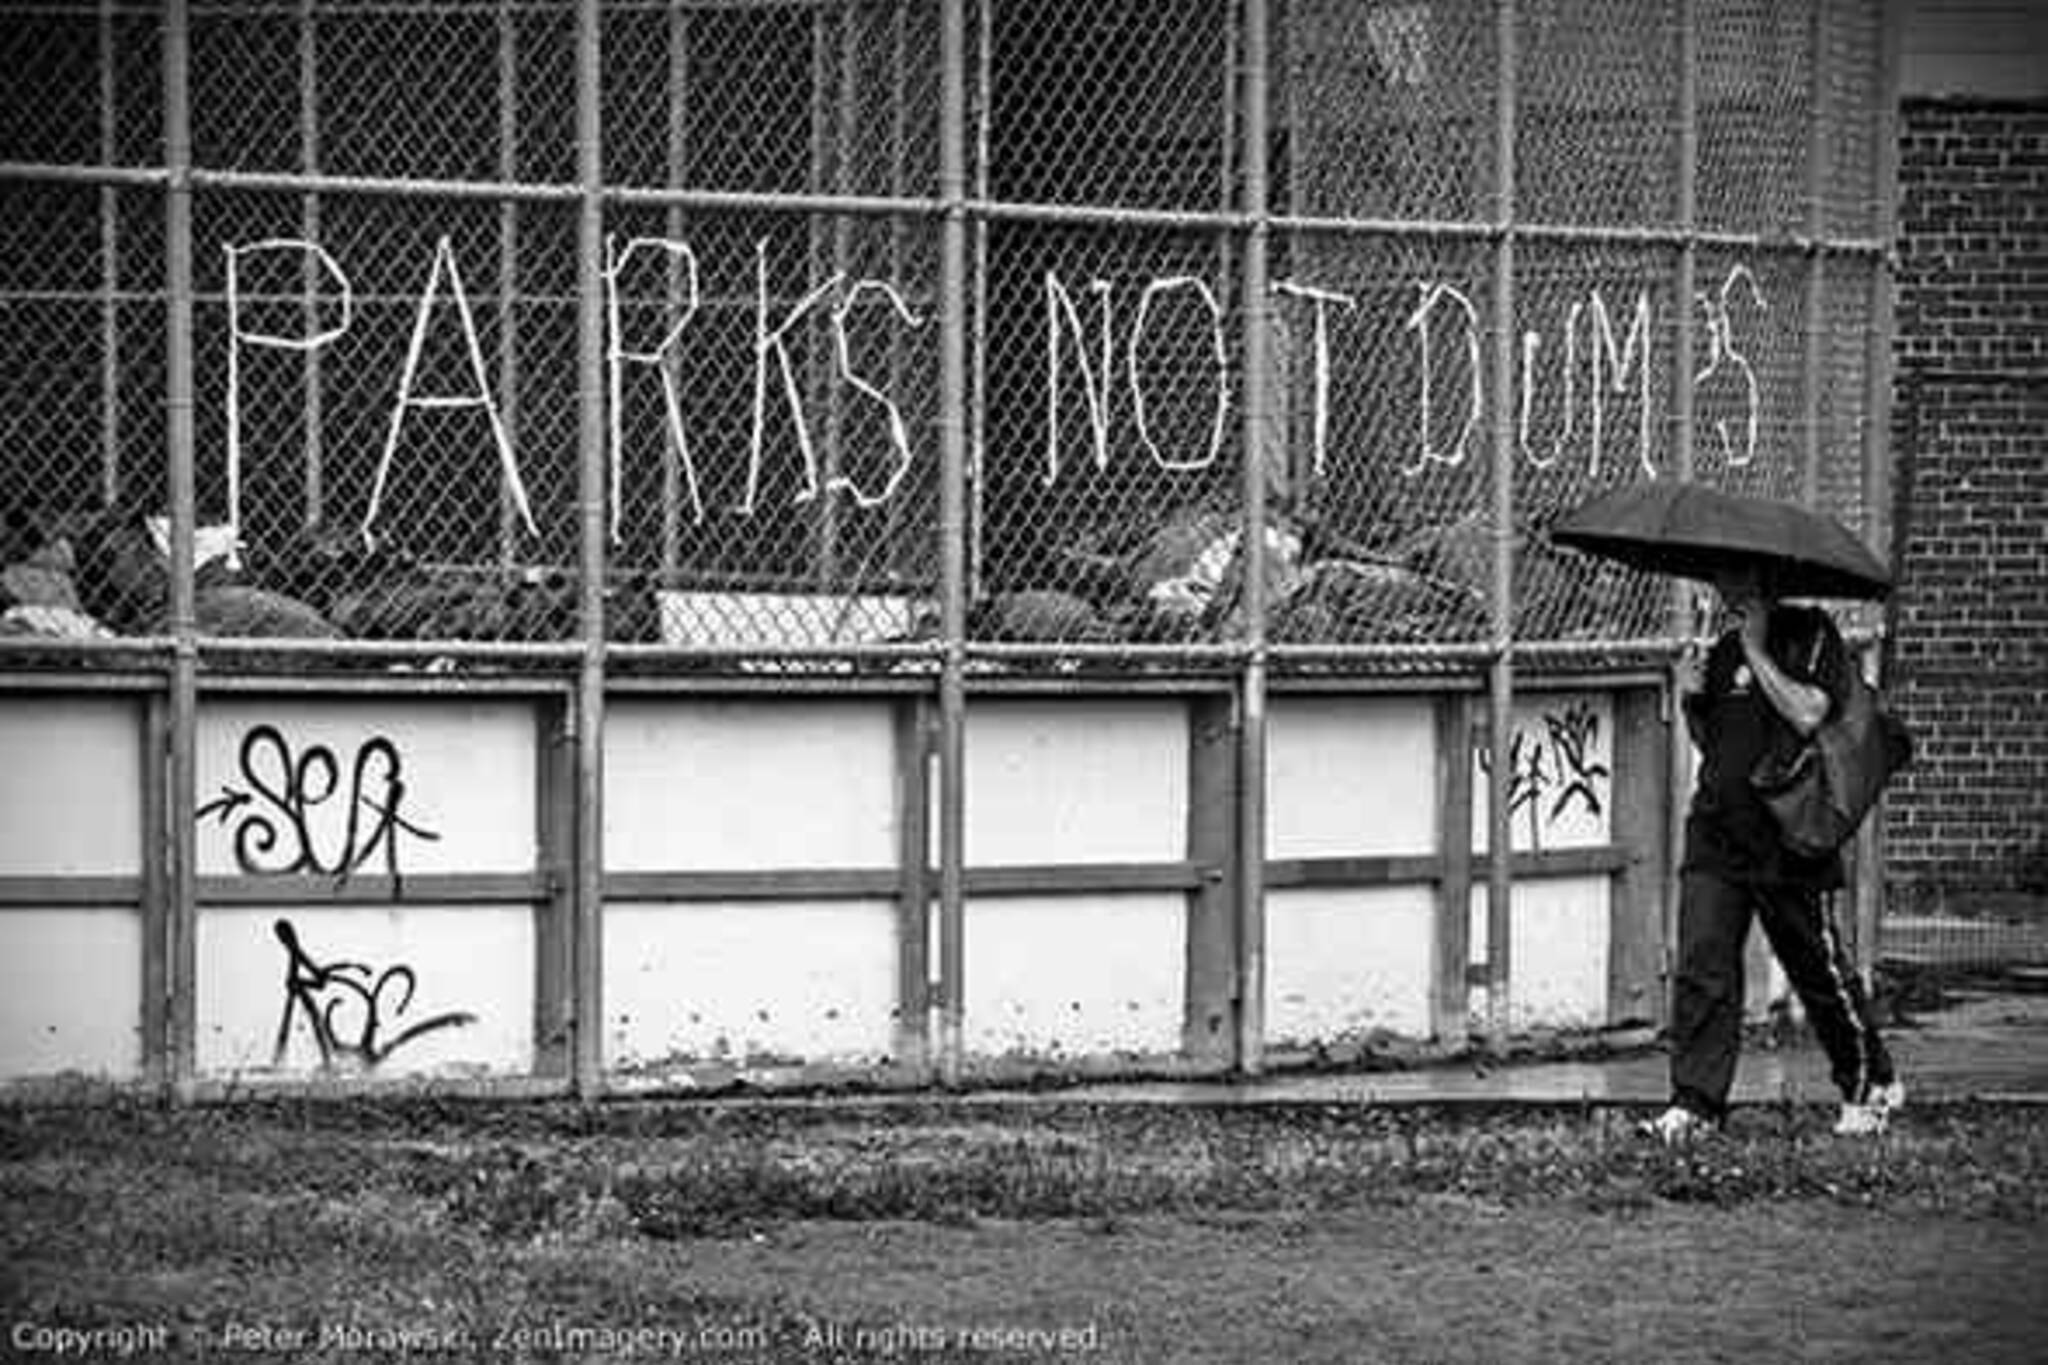 Parks Not Dumps